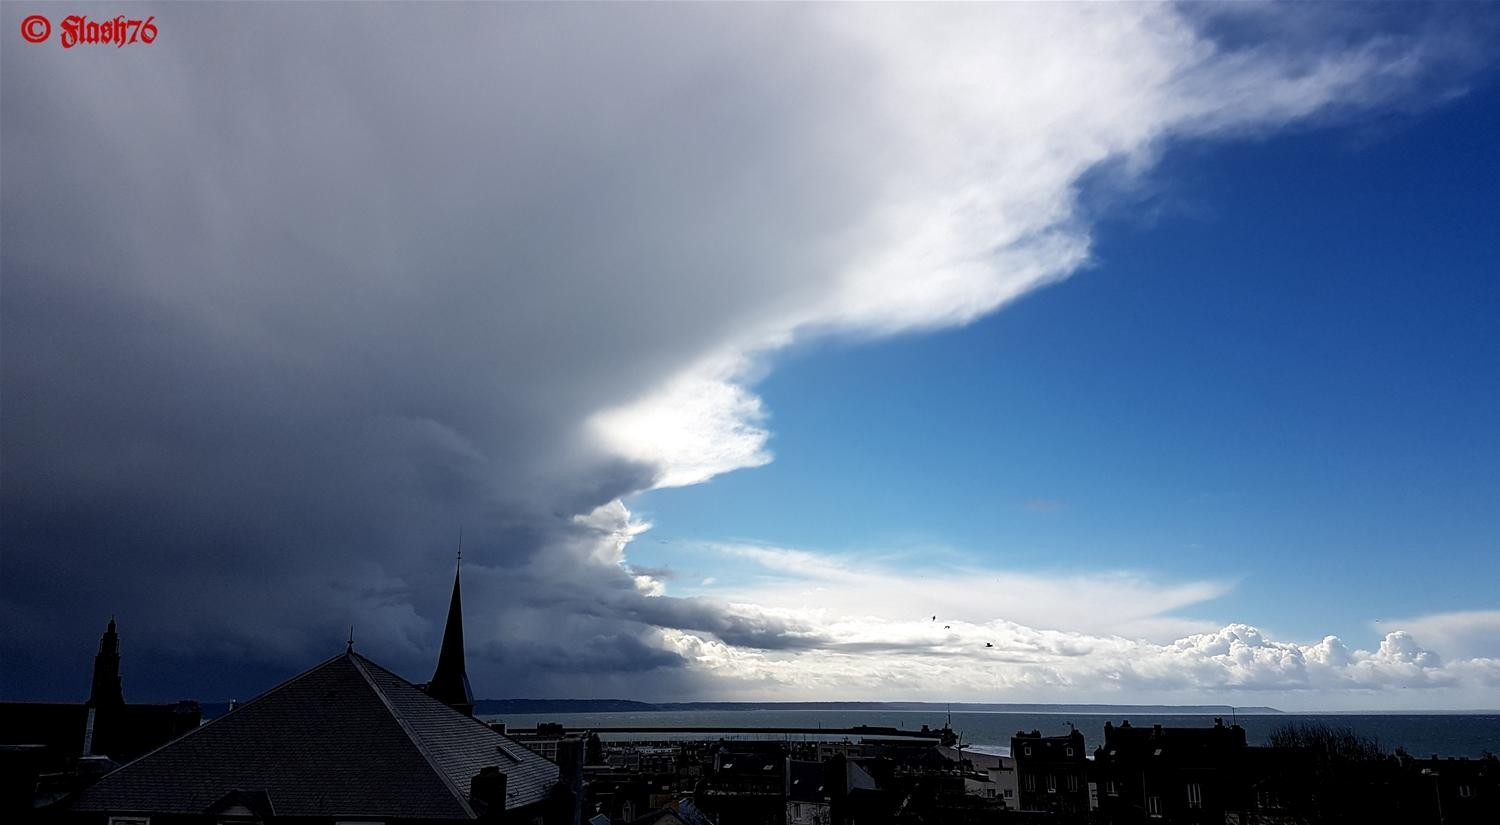 17/03/2019 - Entre orage et ciel dégagé